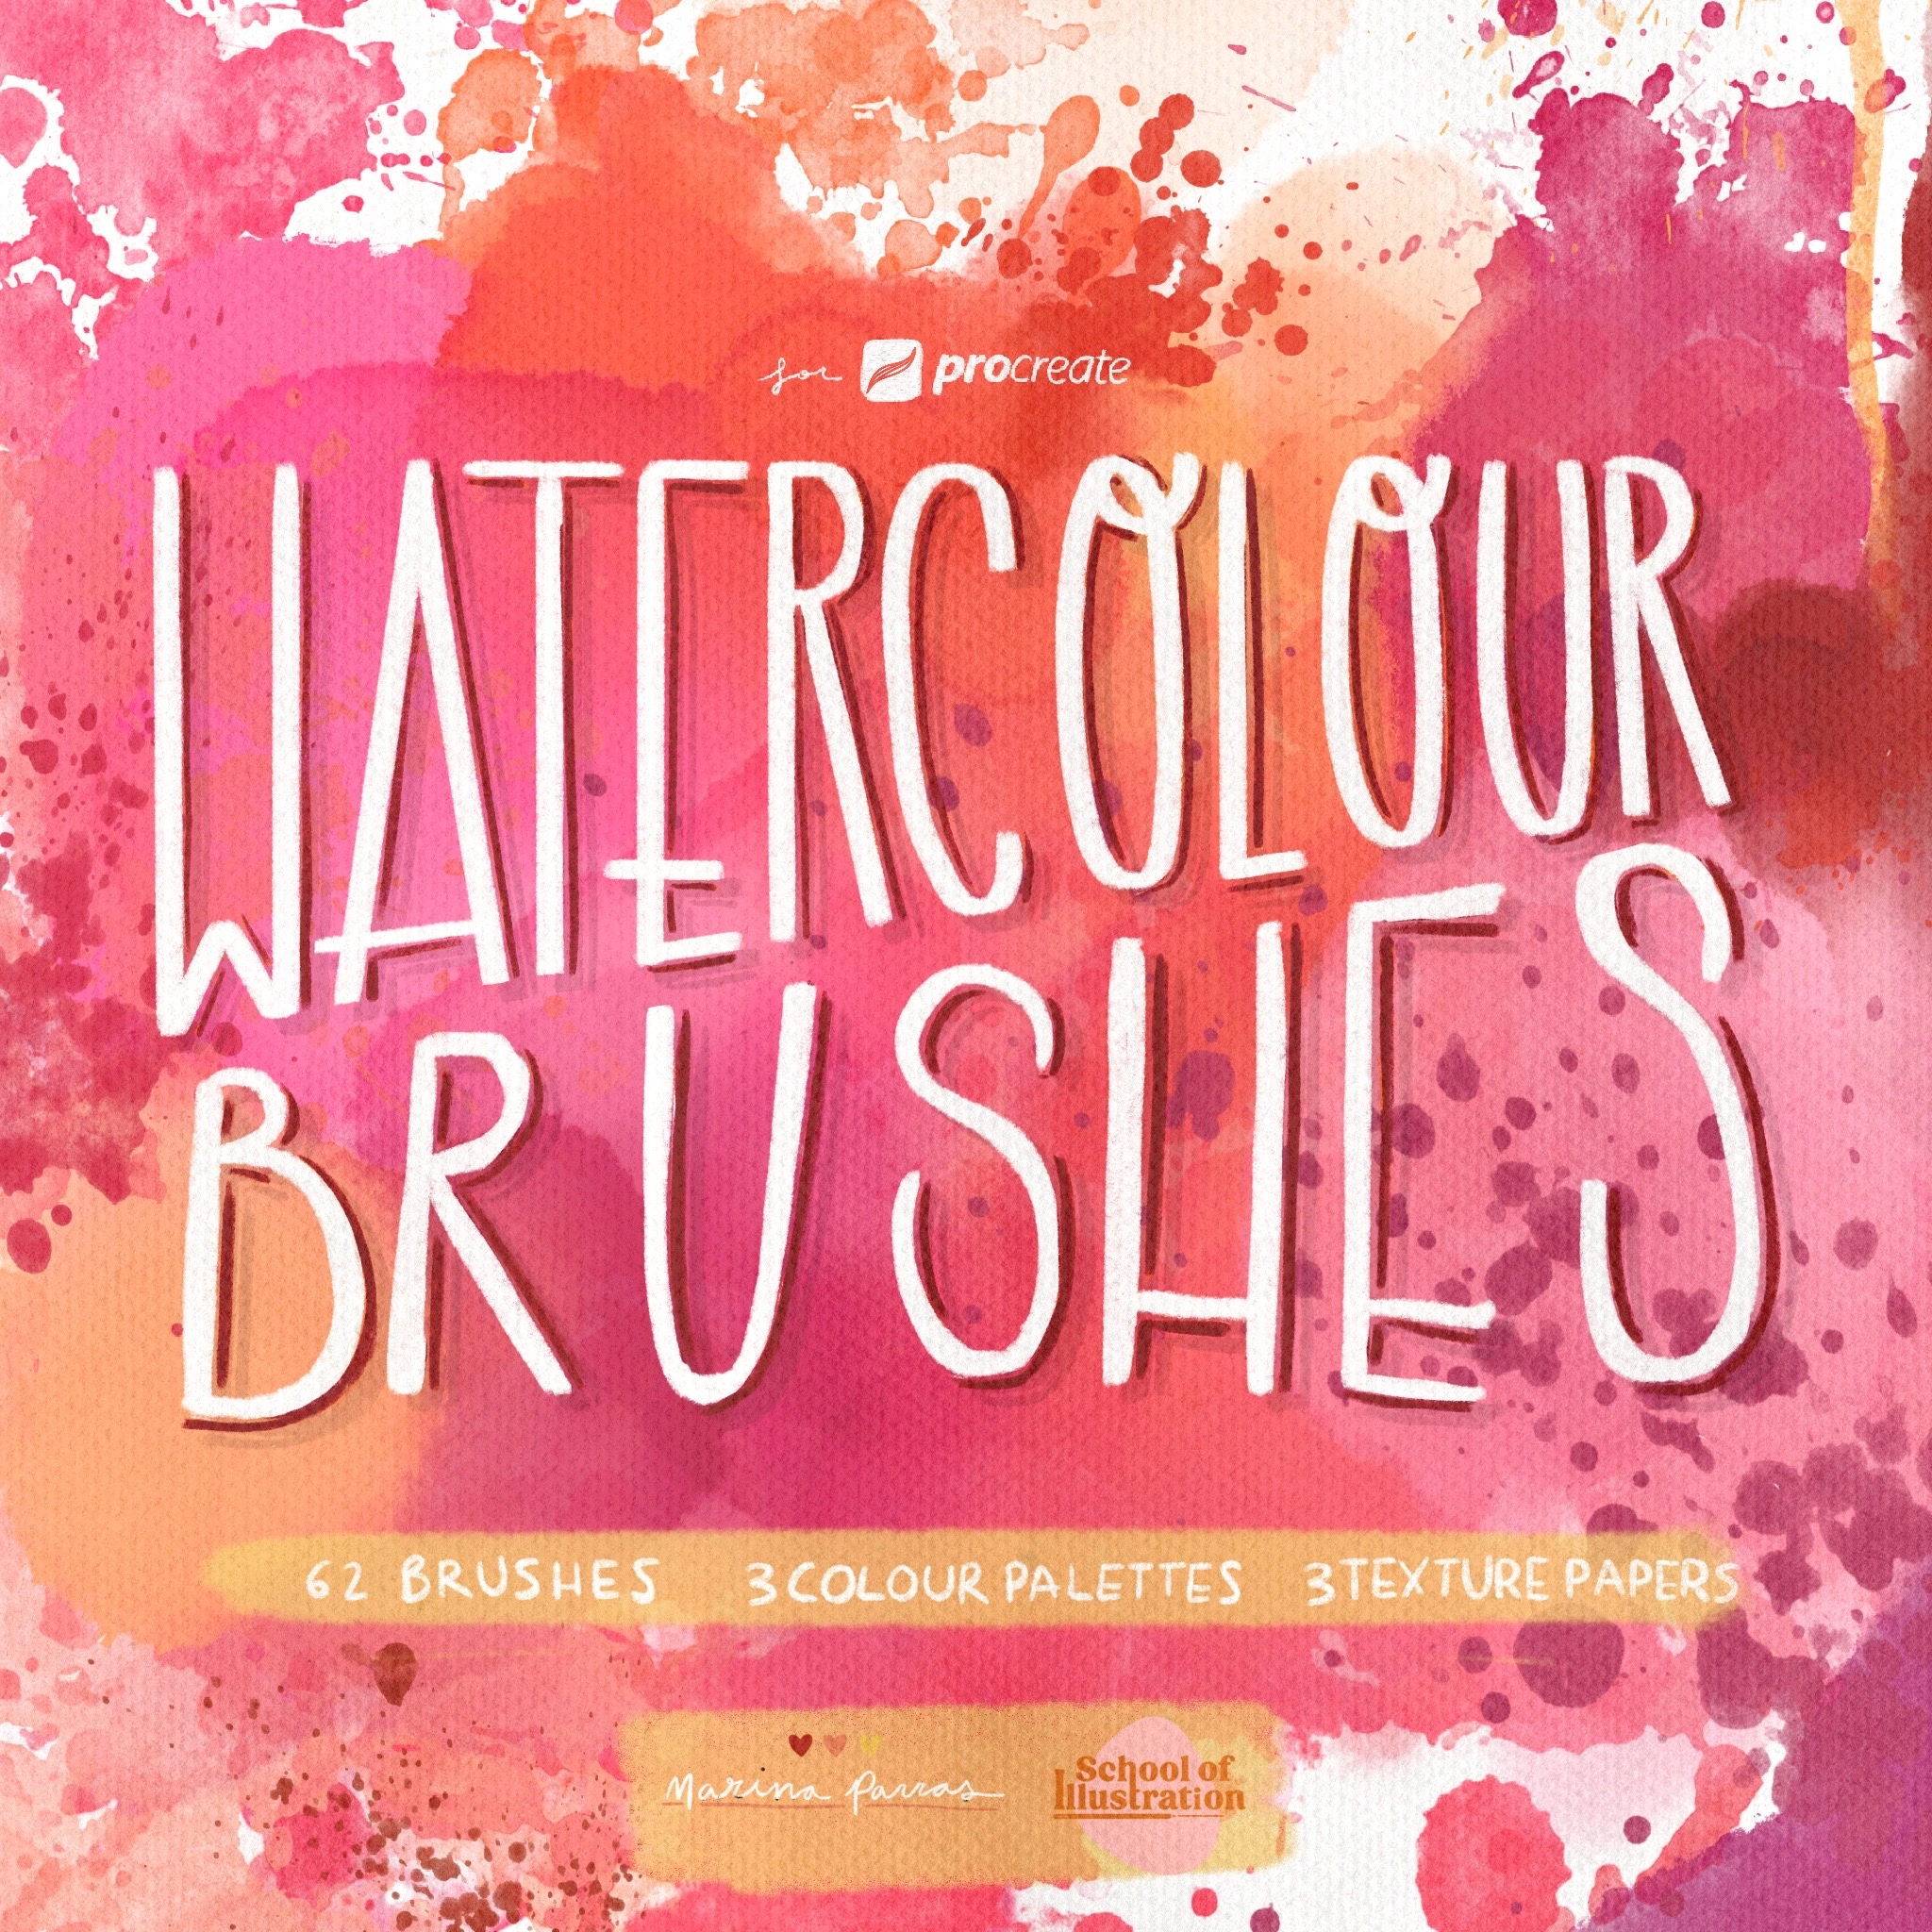 The watercolour digital brush pack